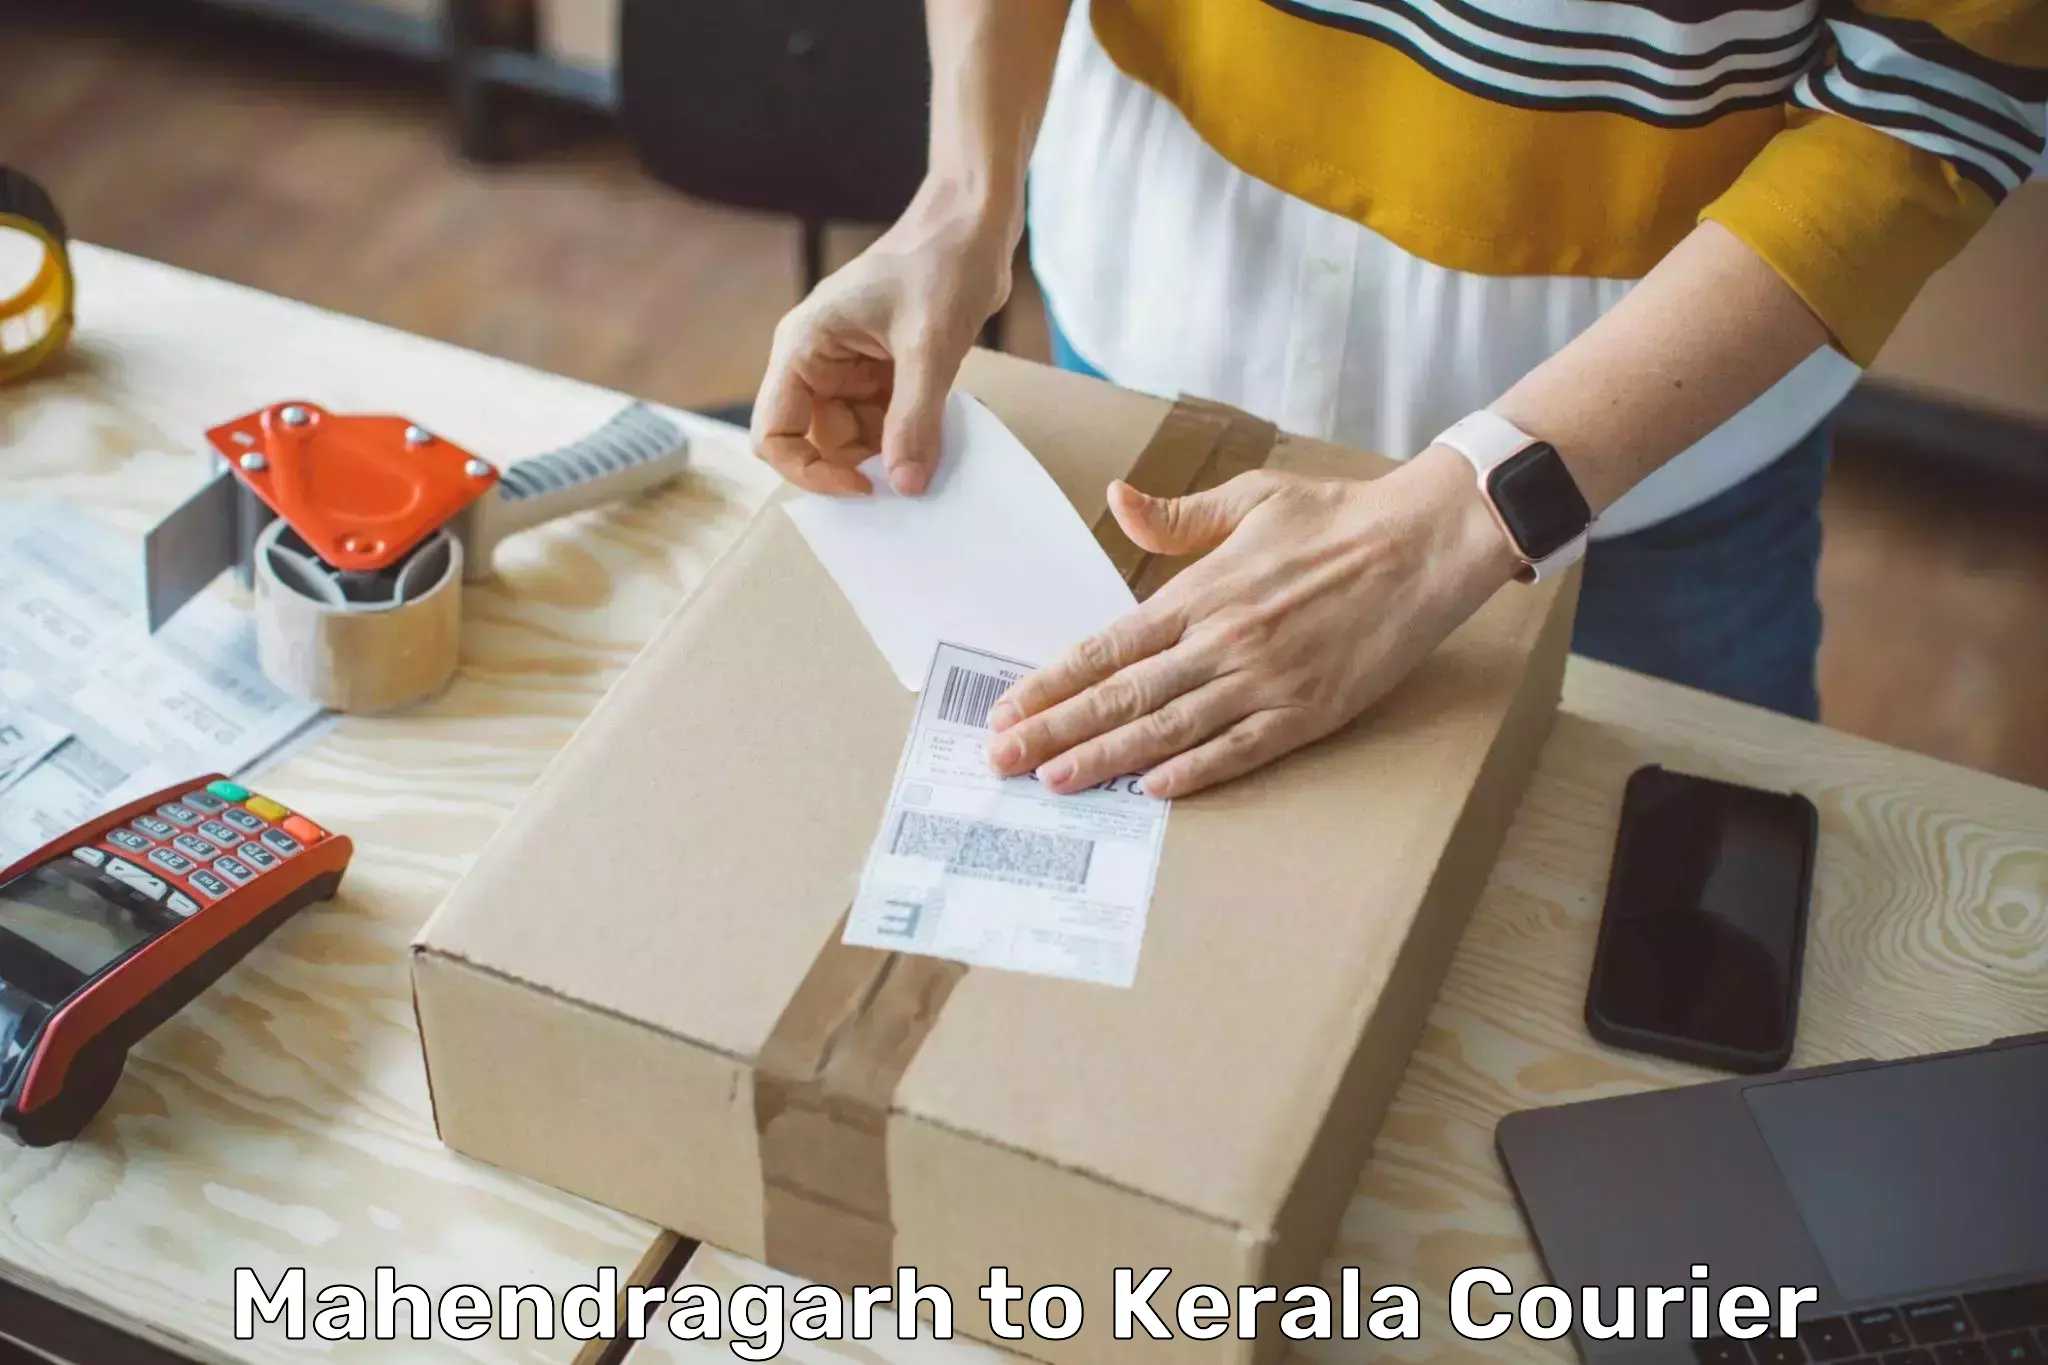 Courier service partnerships Mahendragarh to Kerala